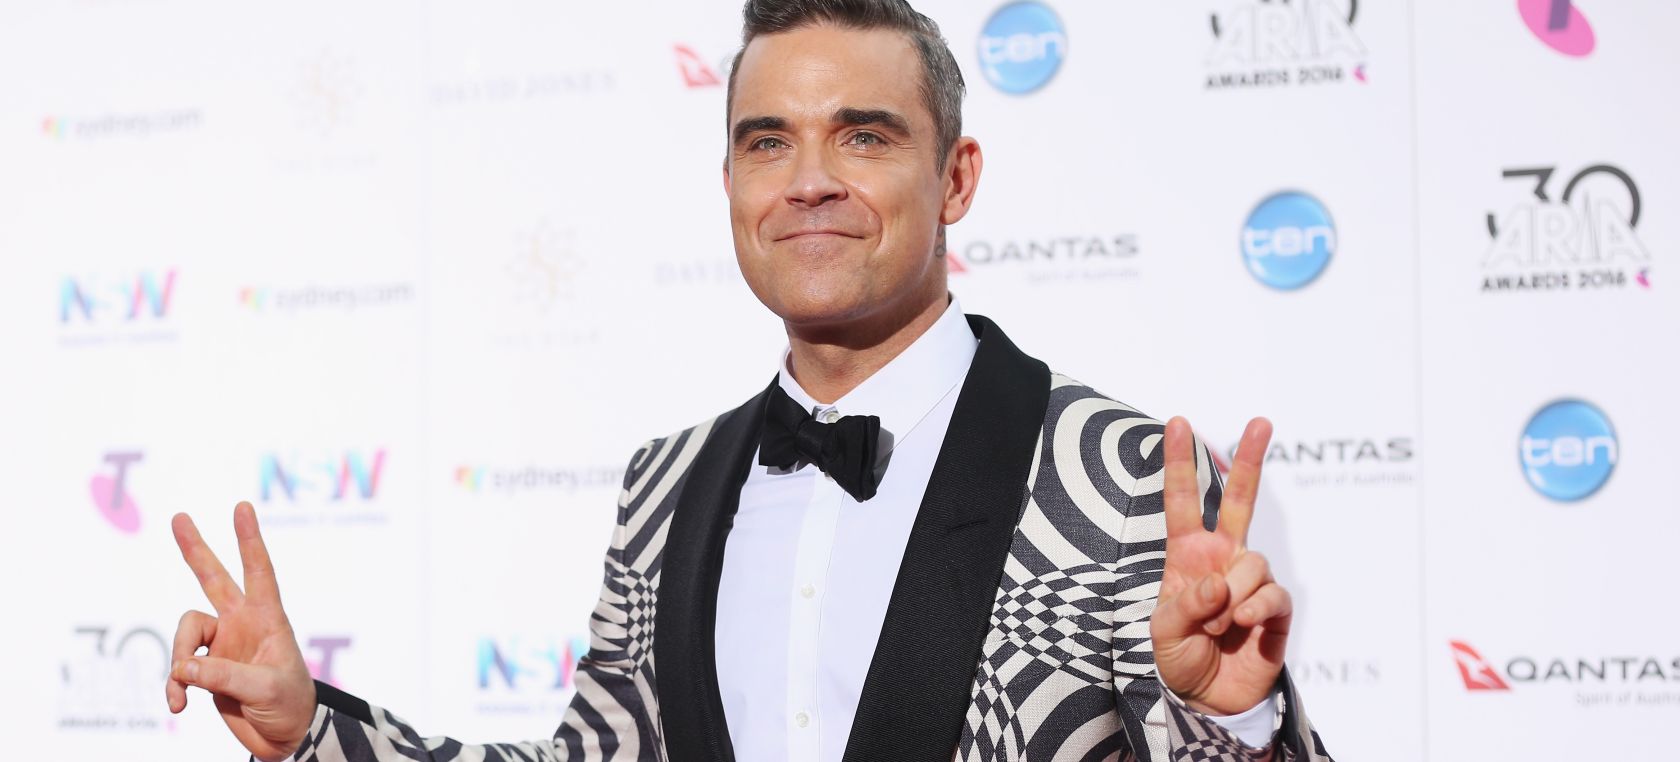 Robbie Williams tendrá una película biográfica dirigida por el creador de ‘El gran showman’